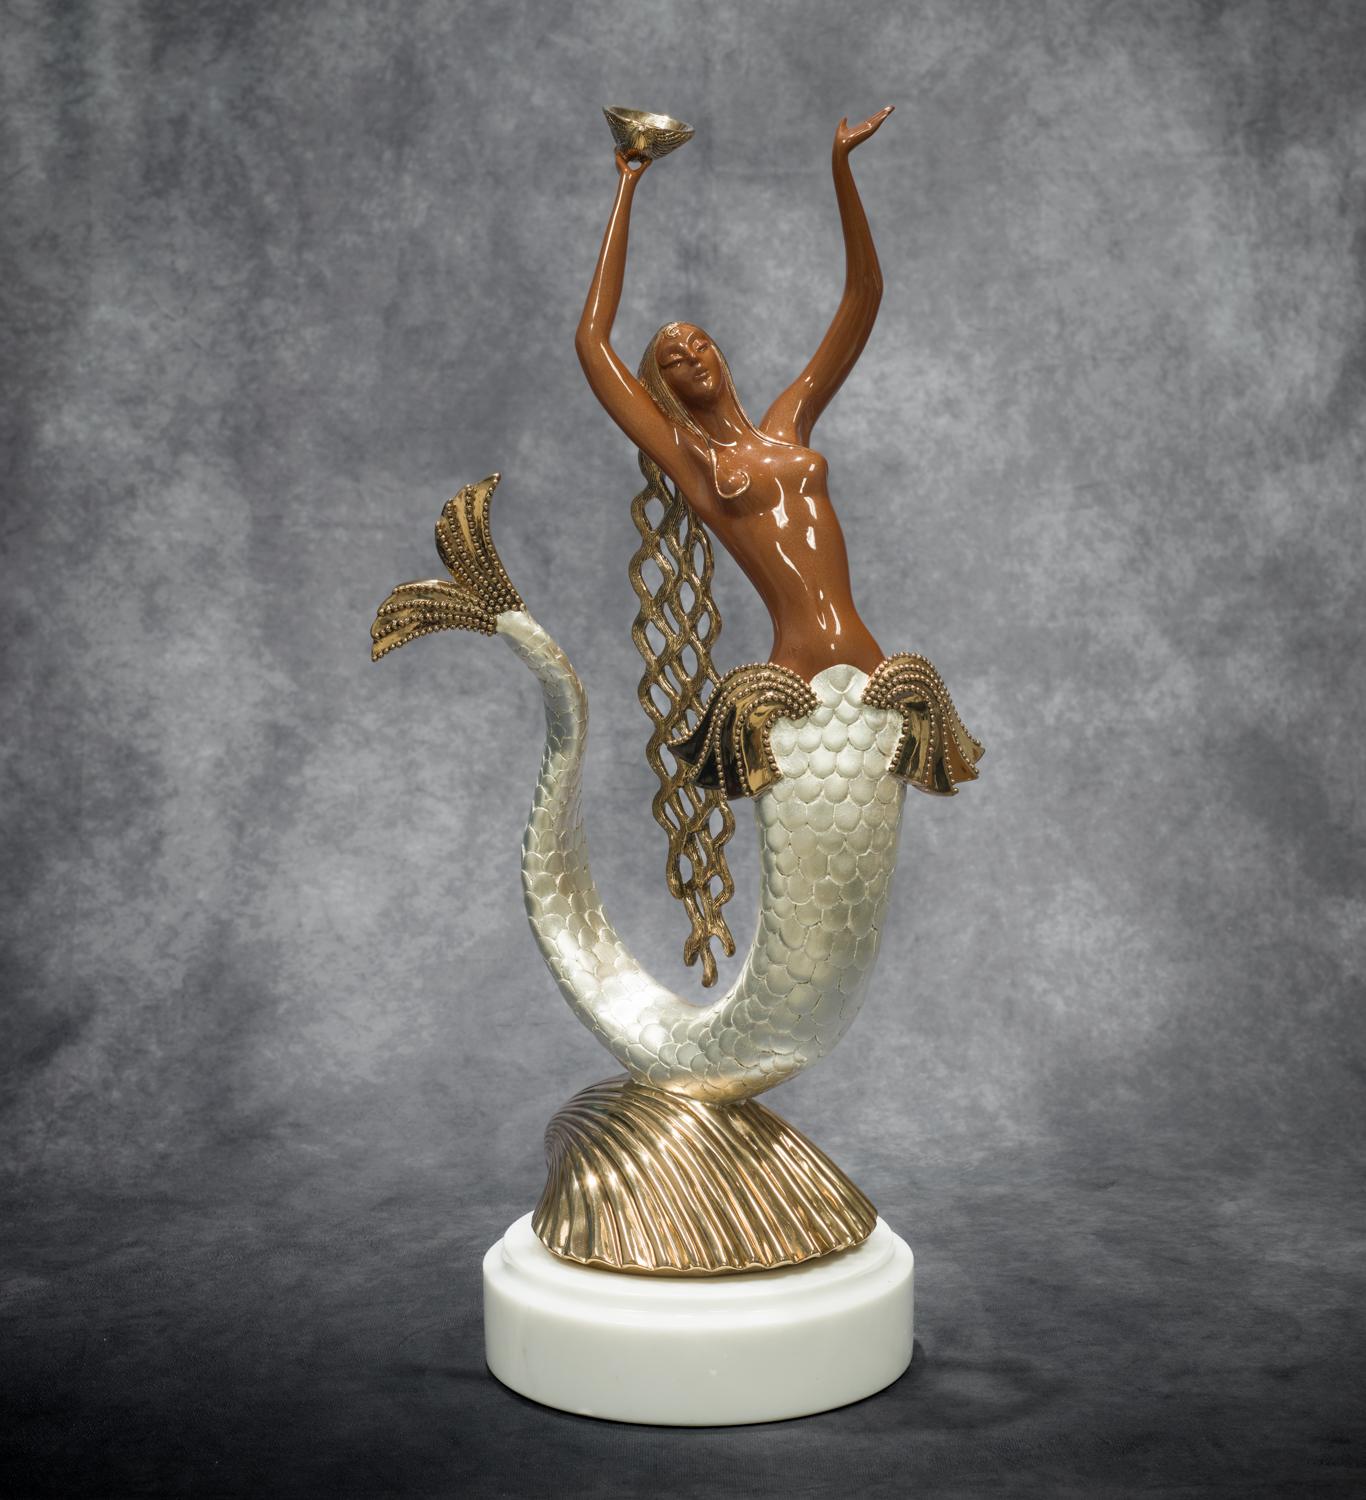 Erté Figurative Sculpture - Mermaid 